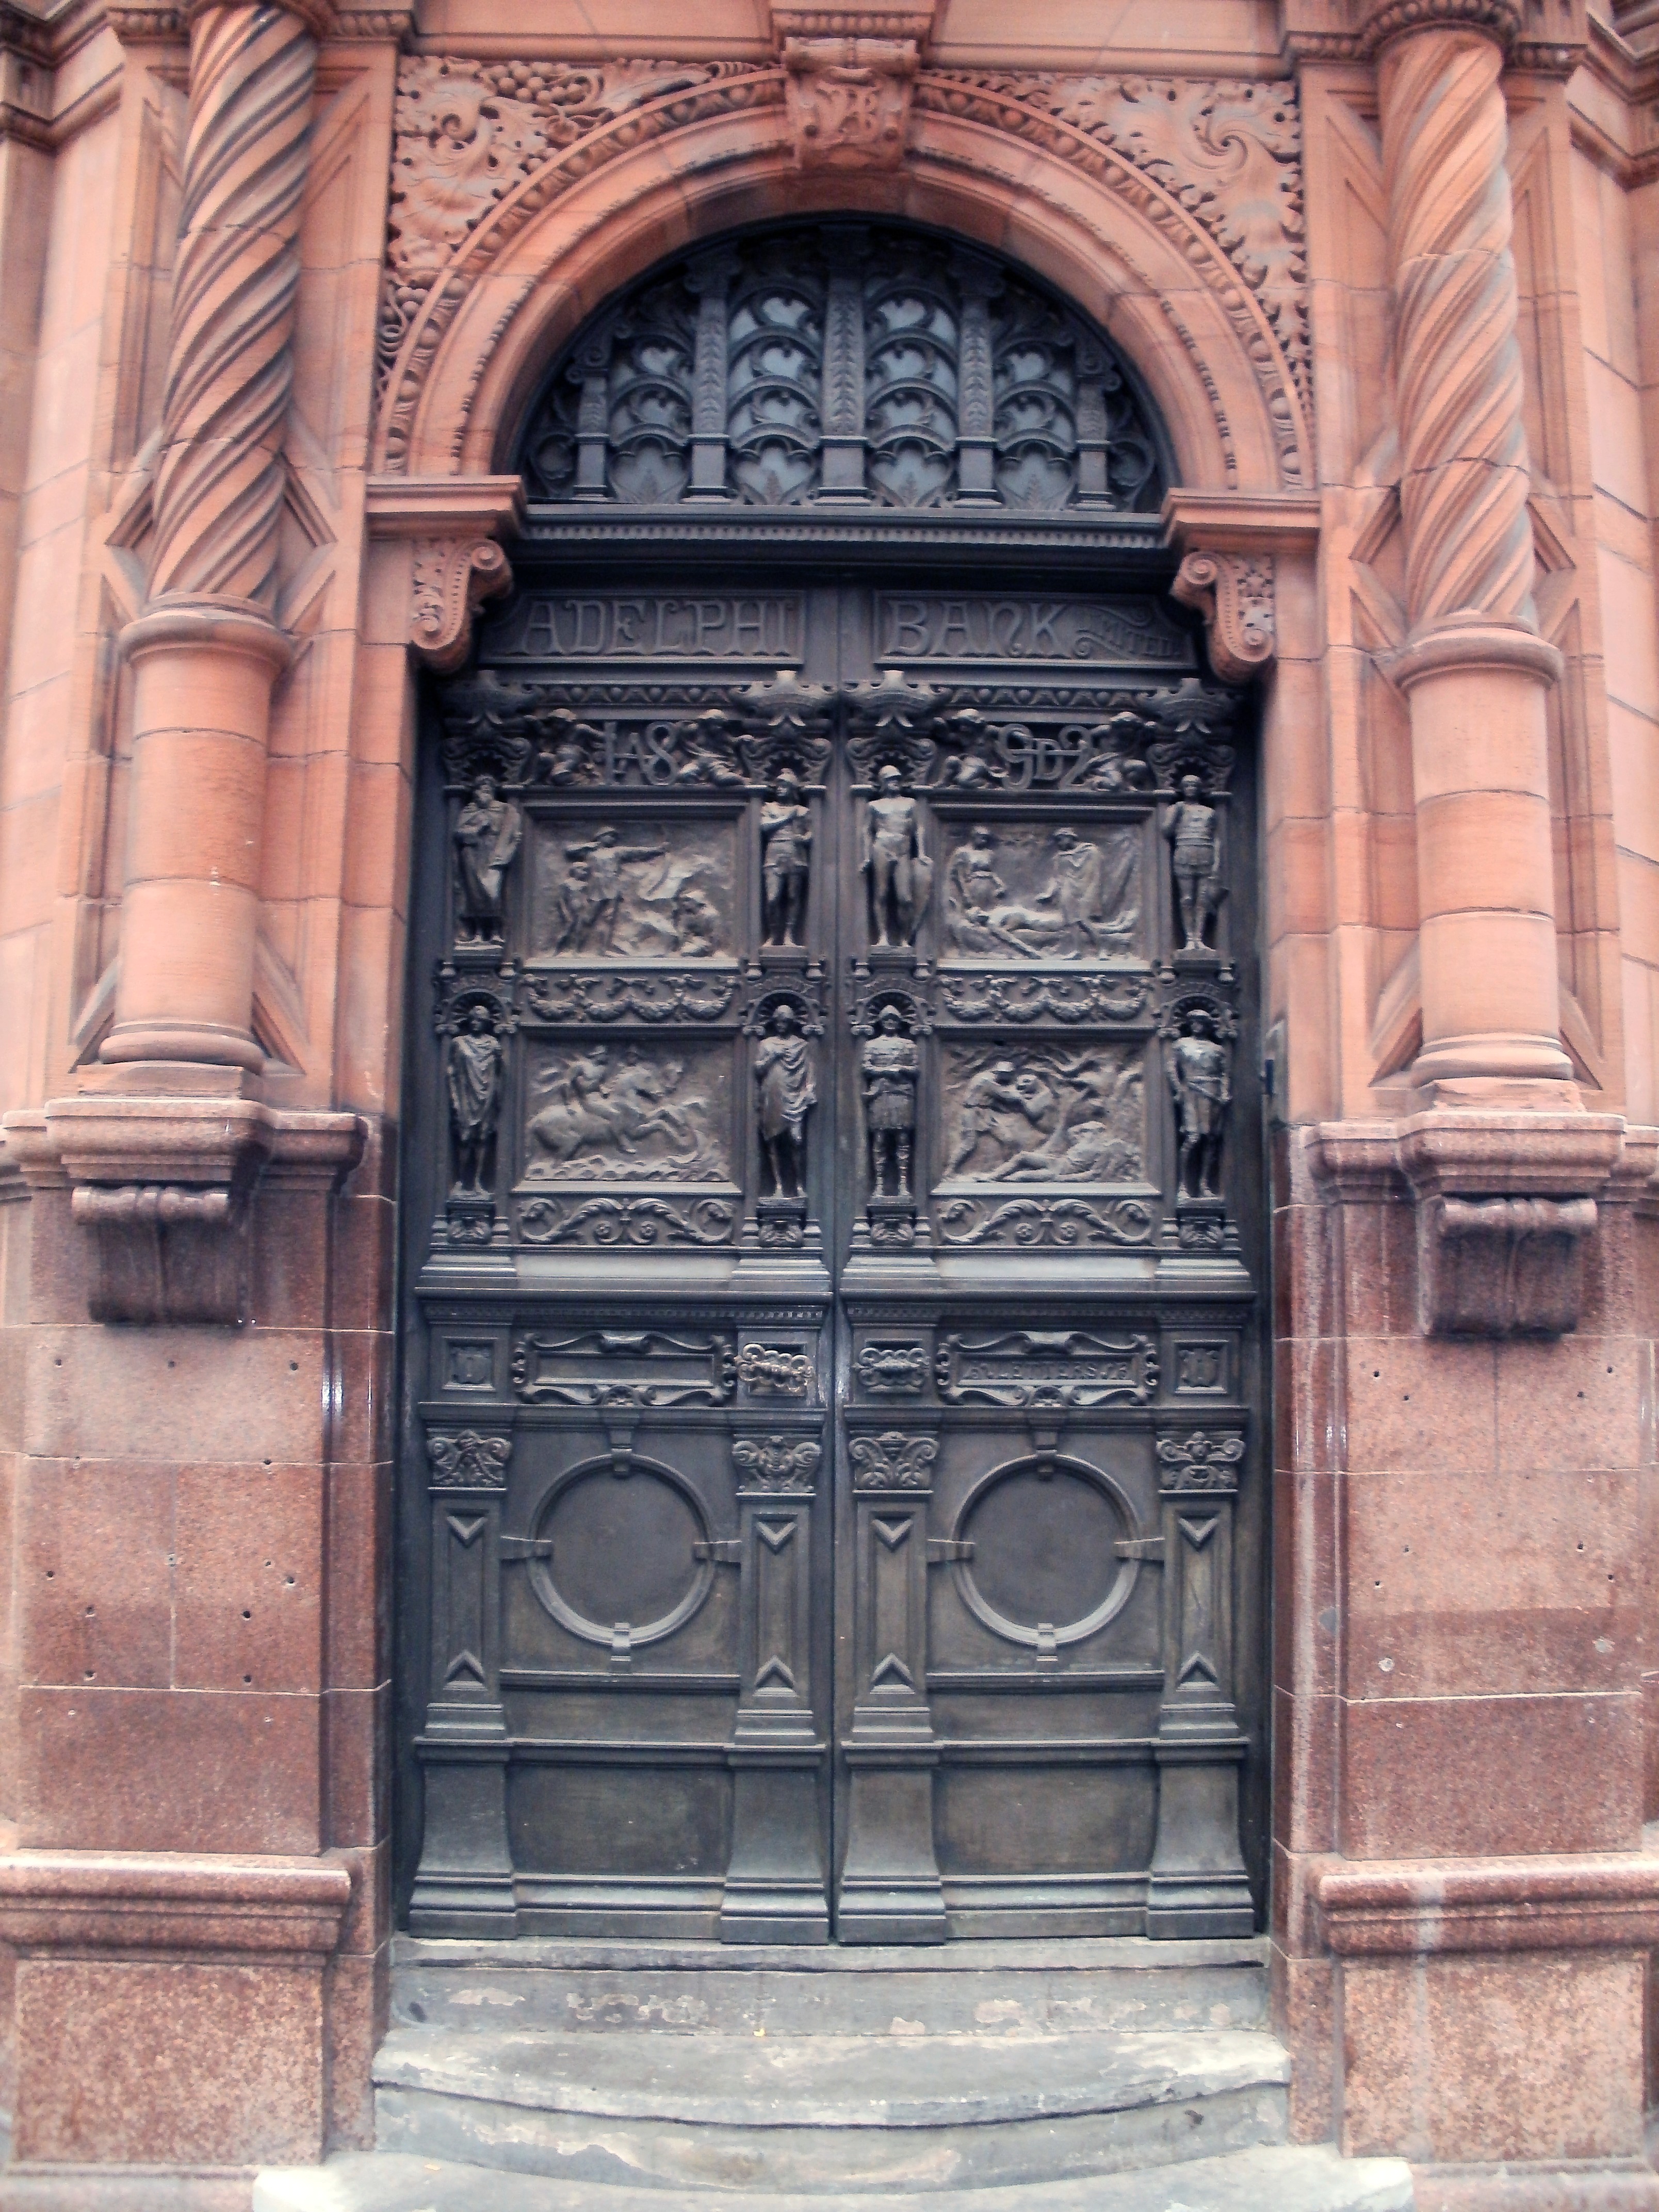 File:Adelphi Bank Door, Castle Street, Liverpool, 22 Aug 2013.jpg ...